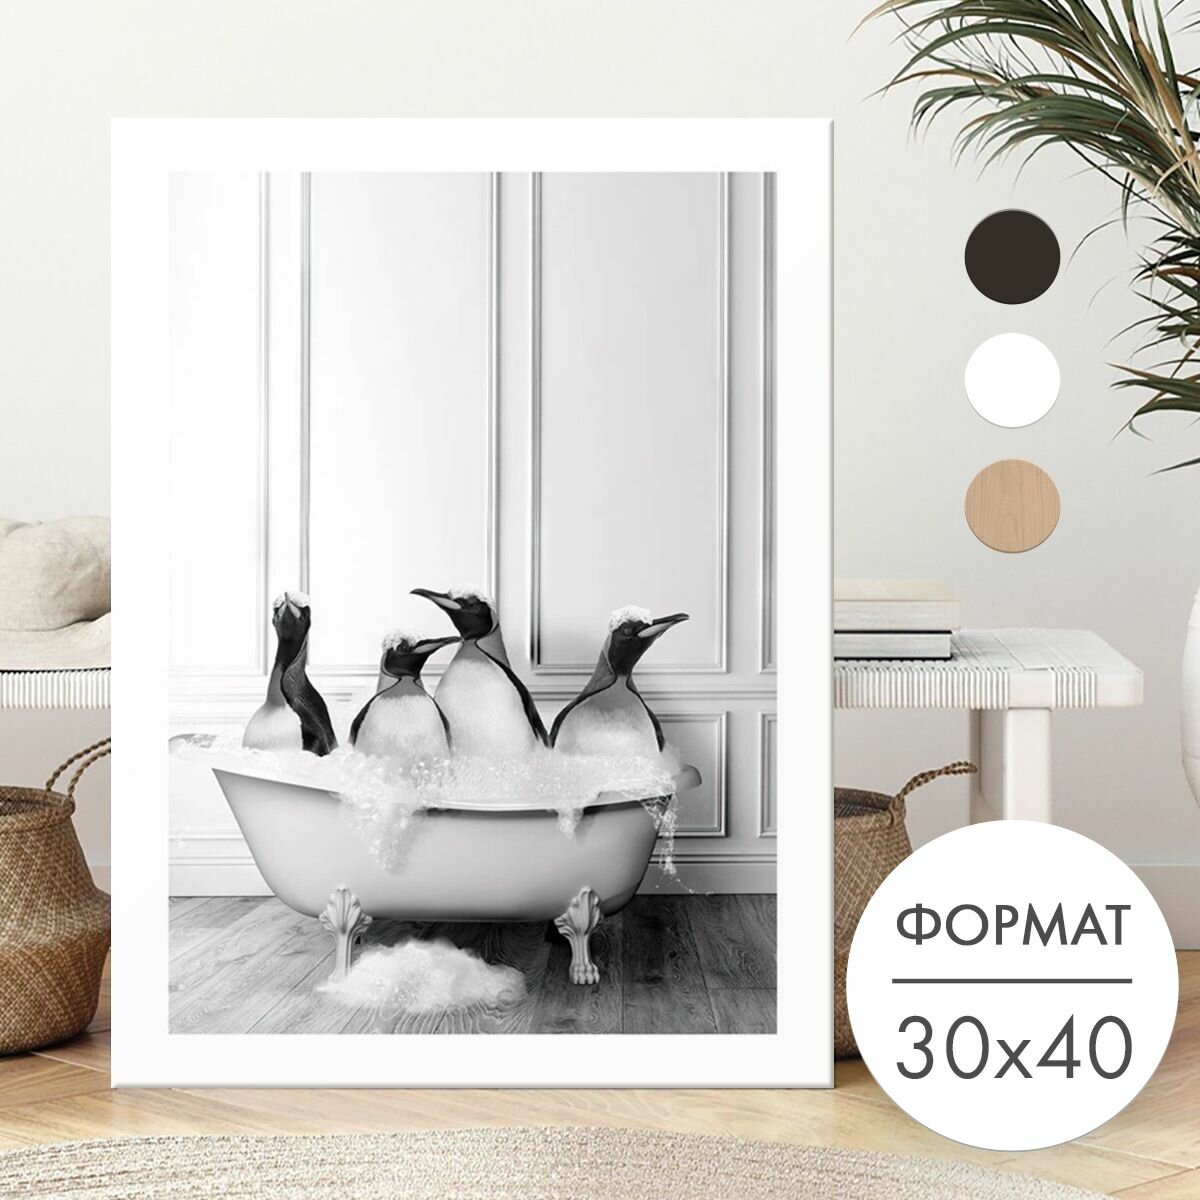 Постер 30х40 без рамки "Четыре пингвина в ванной" для интерьера